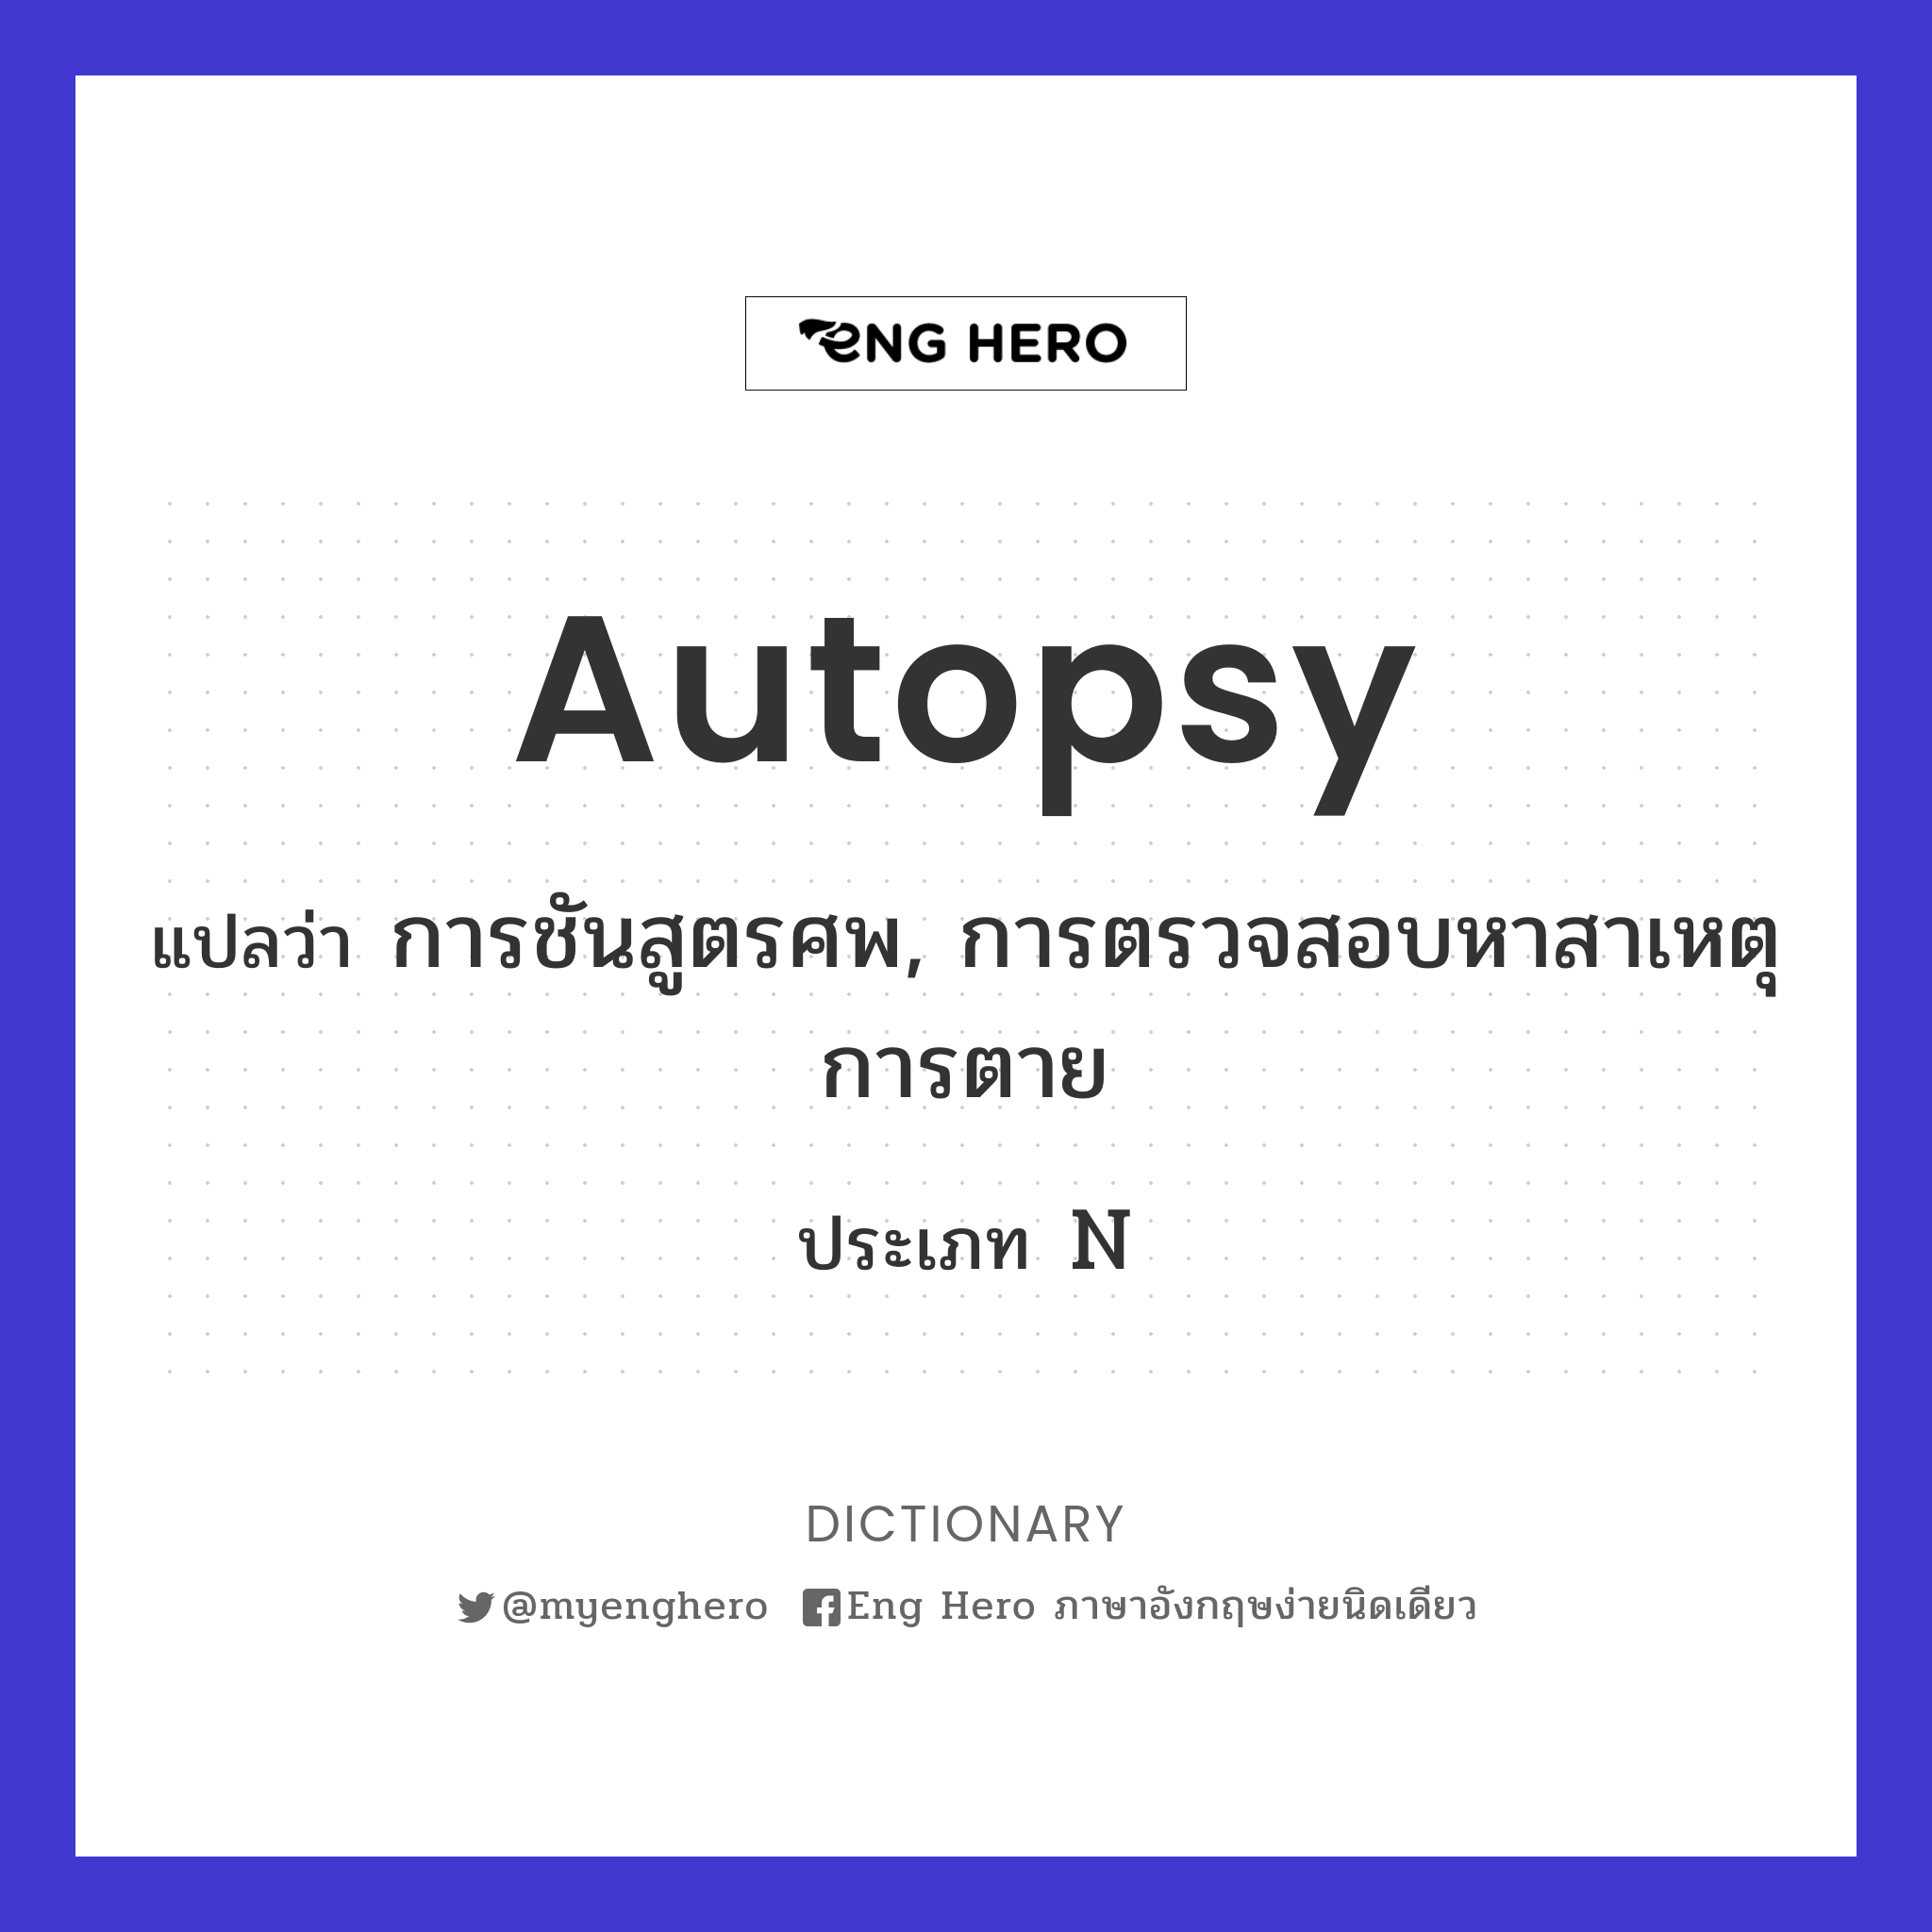 autopsy